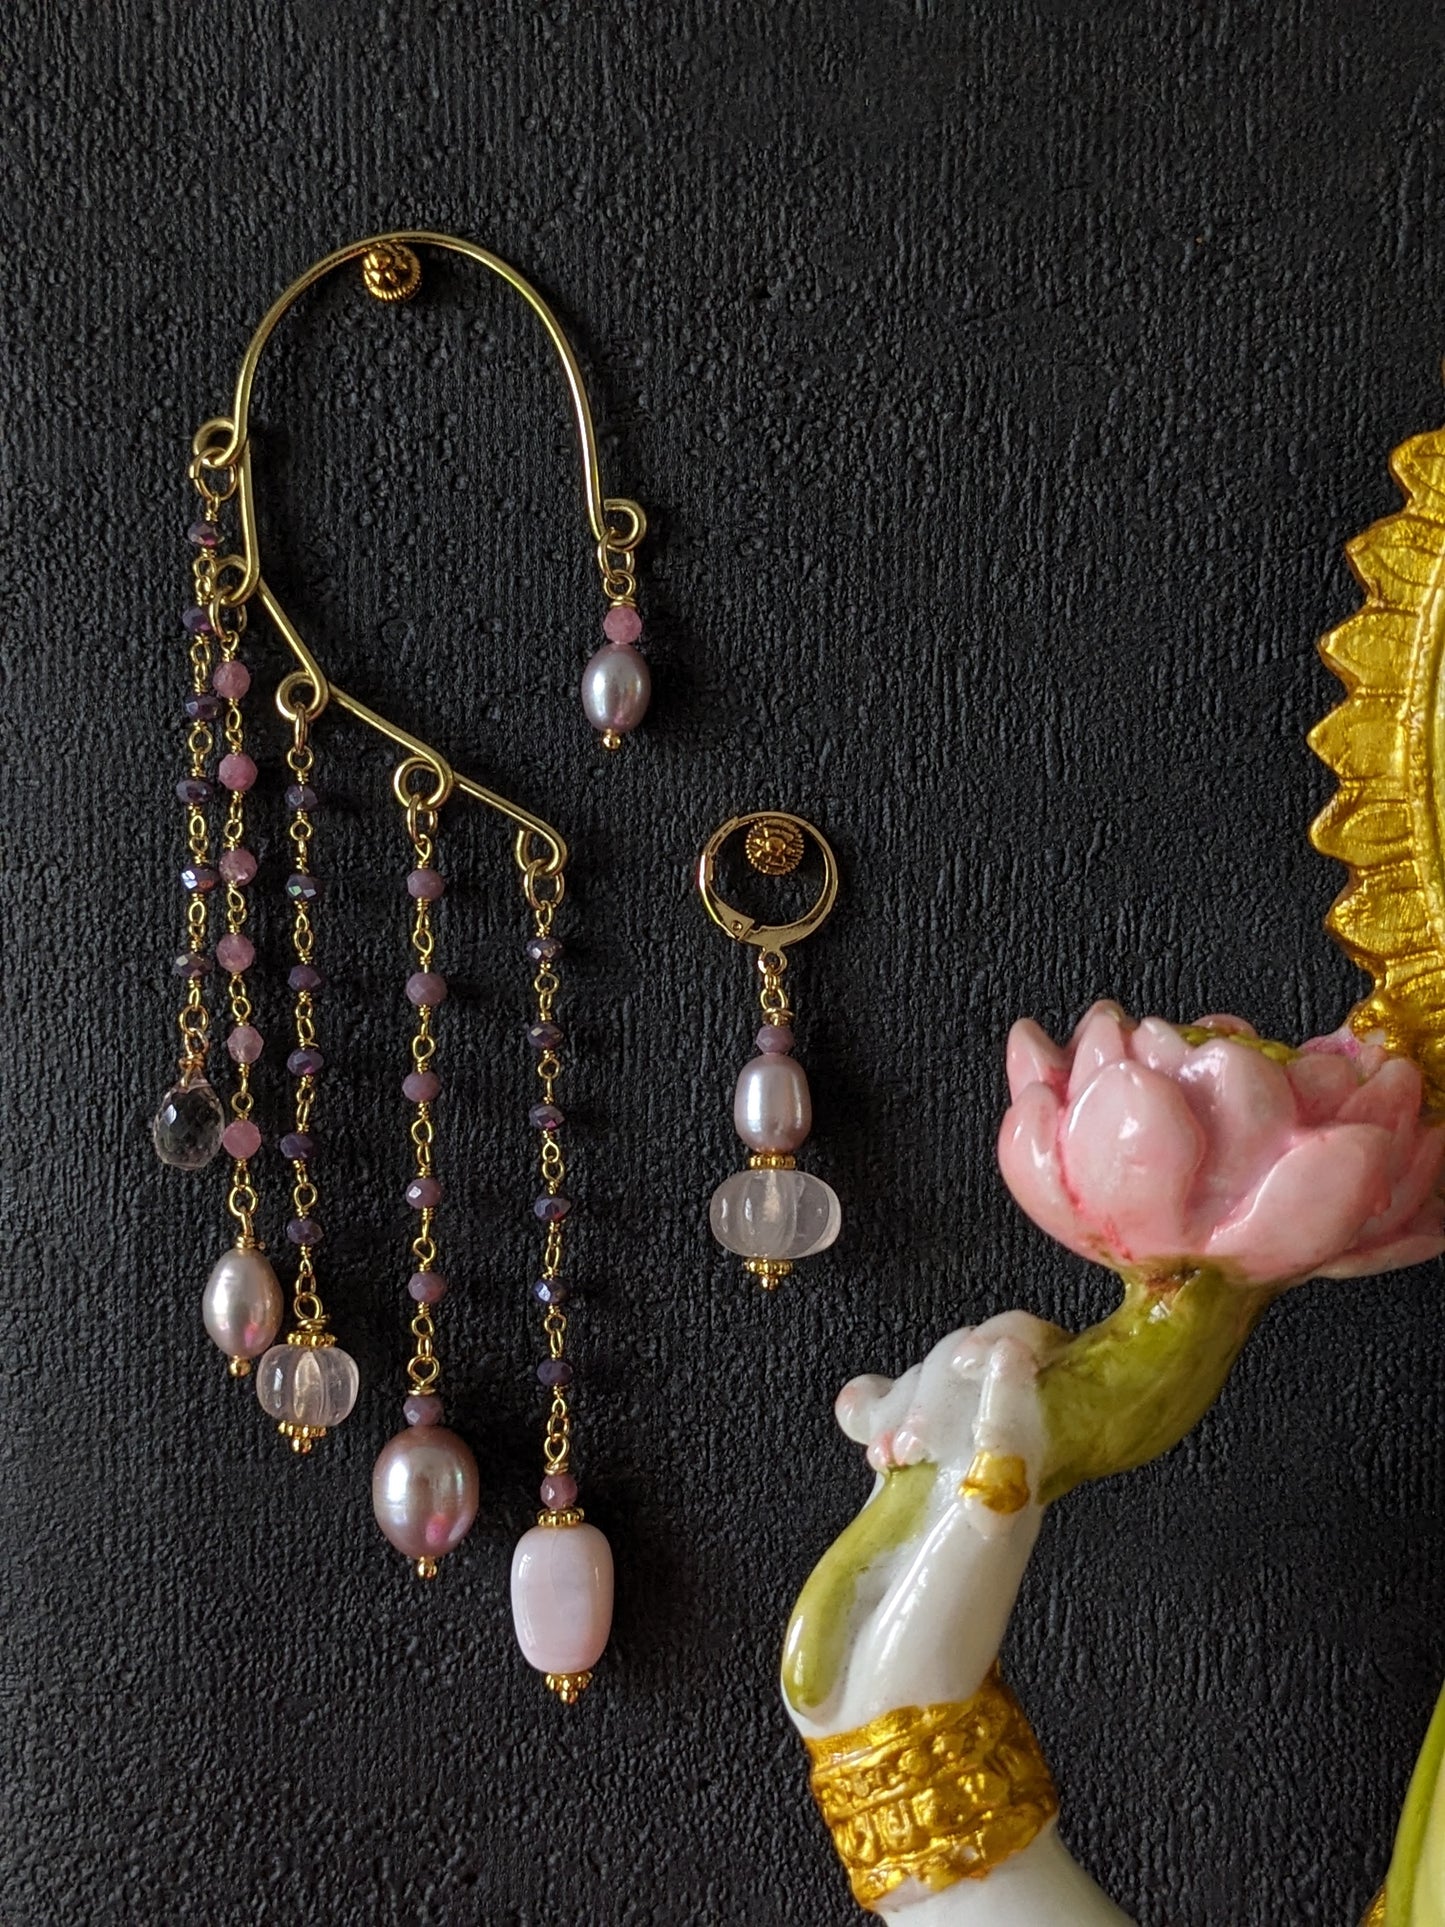 Boucles d'oreilles [Agra] en pierres fines rosées suspendues à une dormeuse délicate. Ces bijoux, inspirés de l'architecture majestueuse d'Agra, capturent la beauté et le romantisme de l'Inde